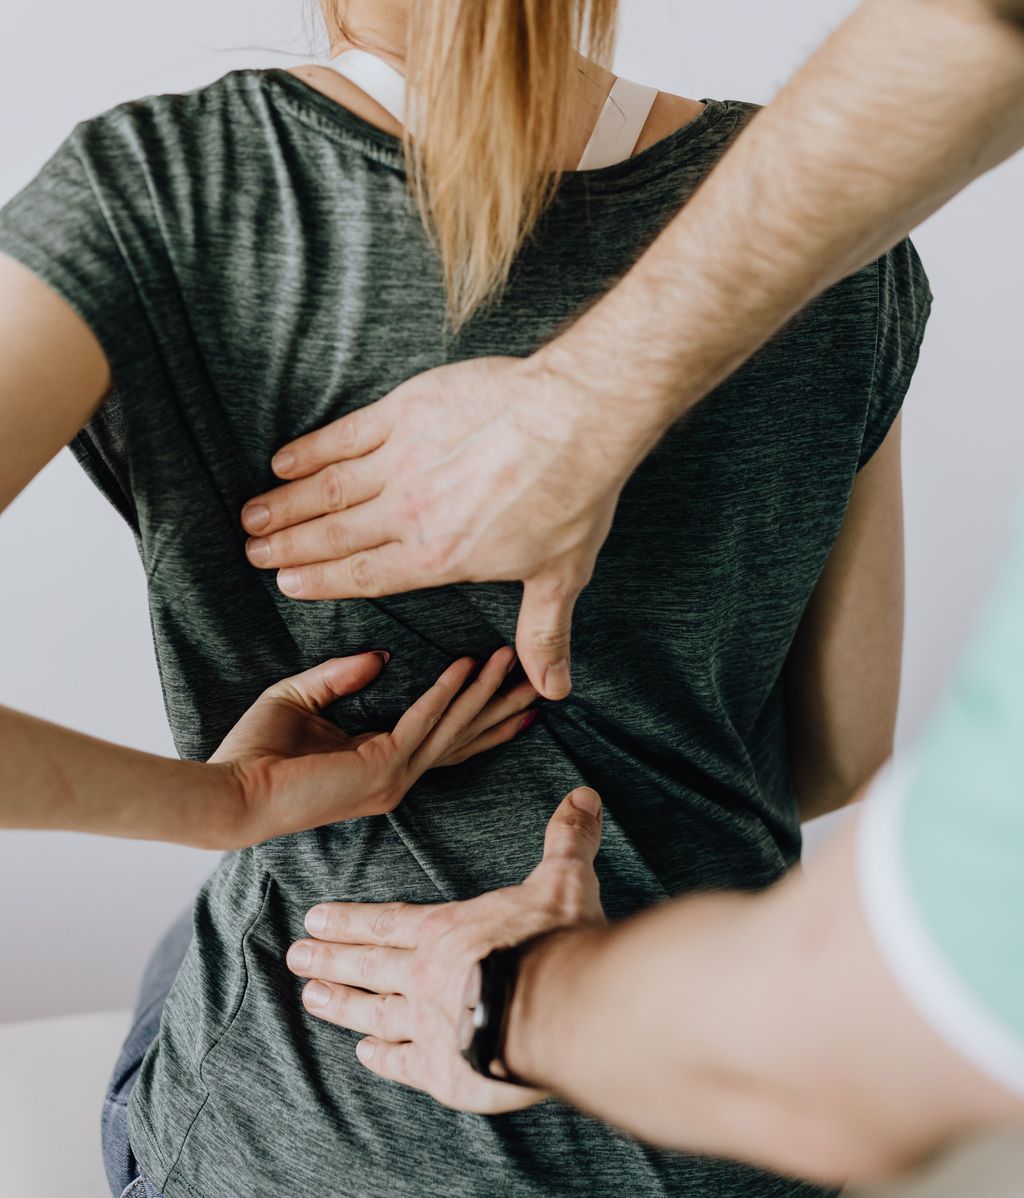 La cesárea puede provocar dolores de espalda. FUENTE: Pexels